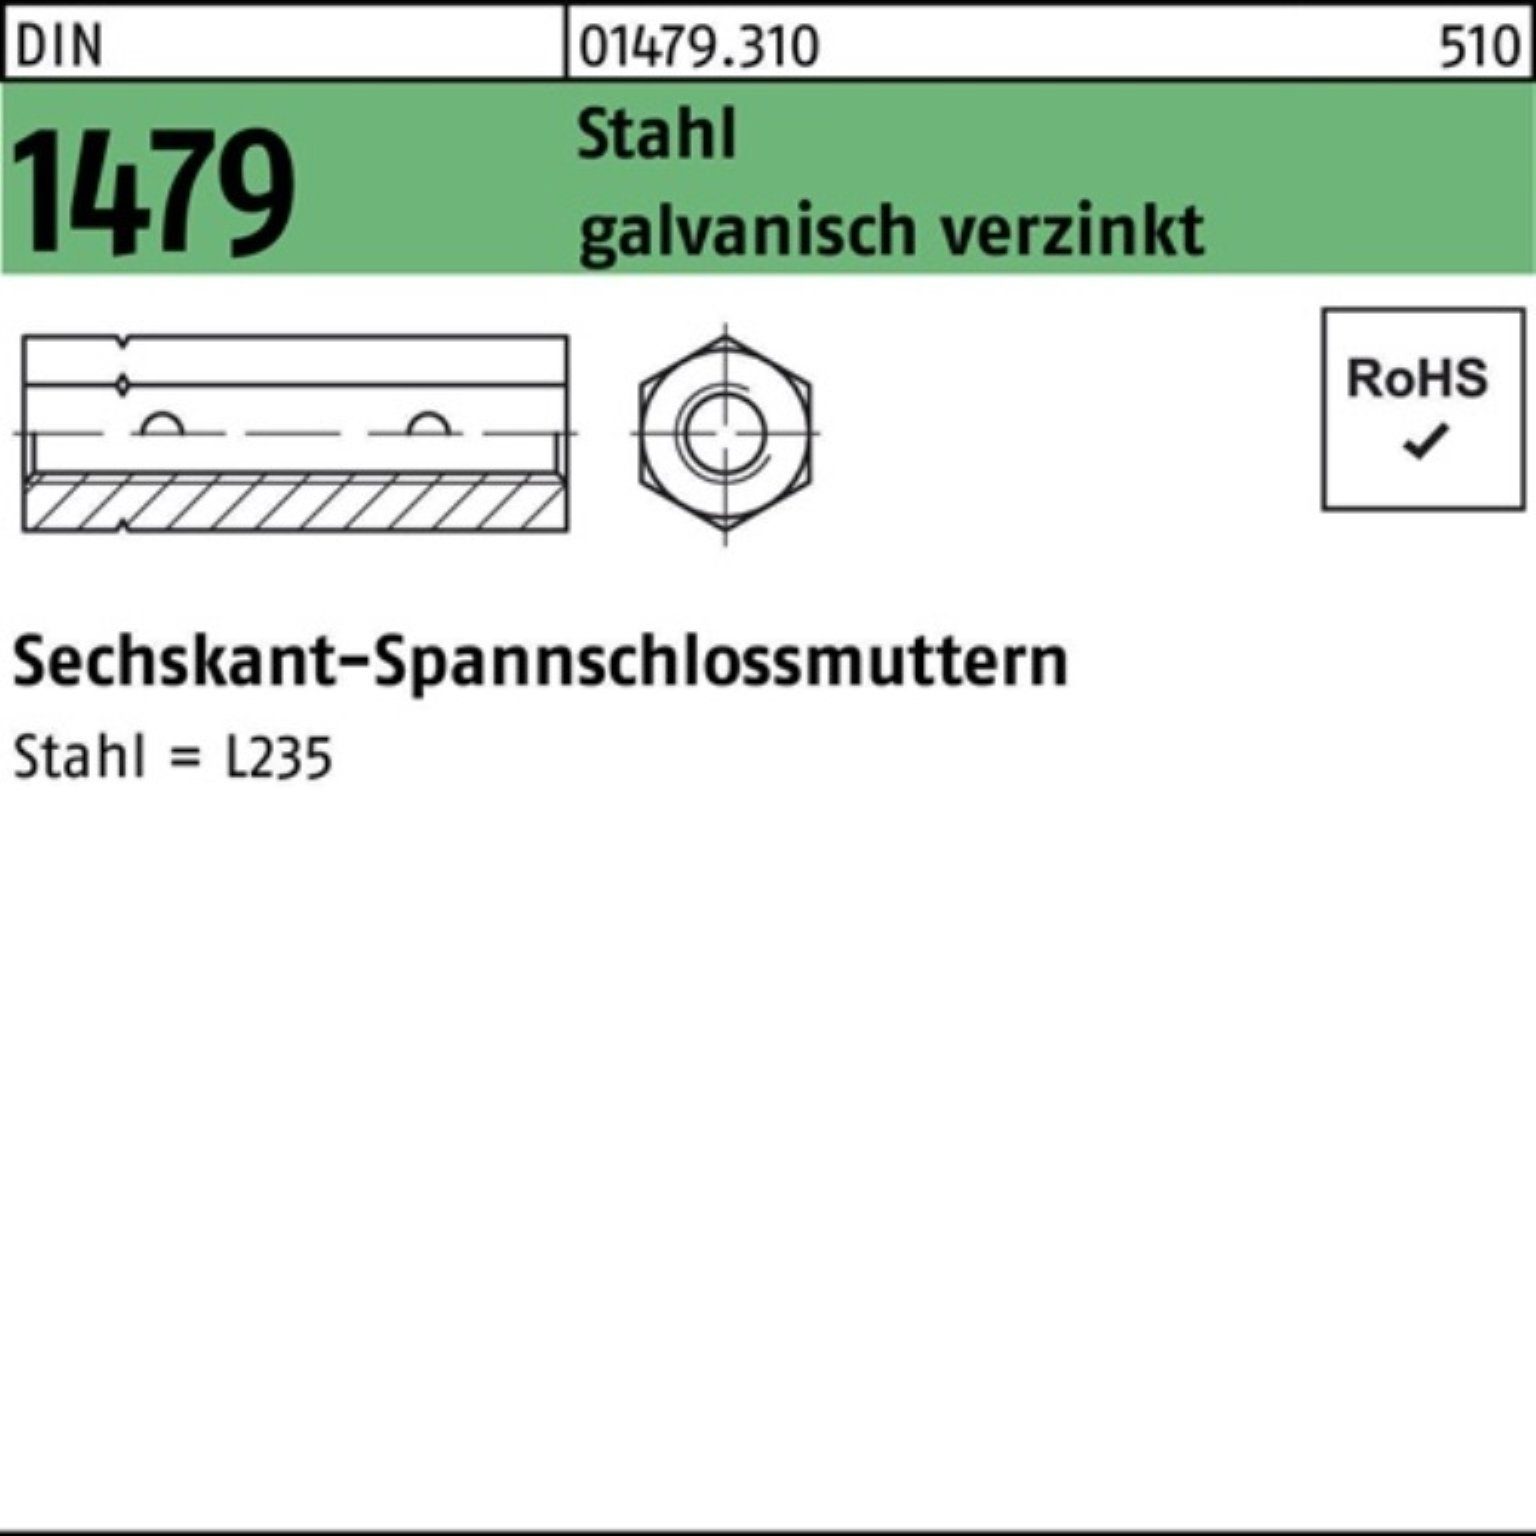 M20 Sechskantspannschlossmutter Pack 100er Reyher DIN Spannschloss Stahl 1479 ÜZ galv.ver